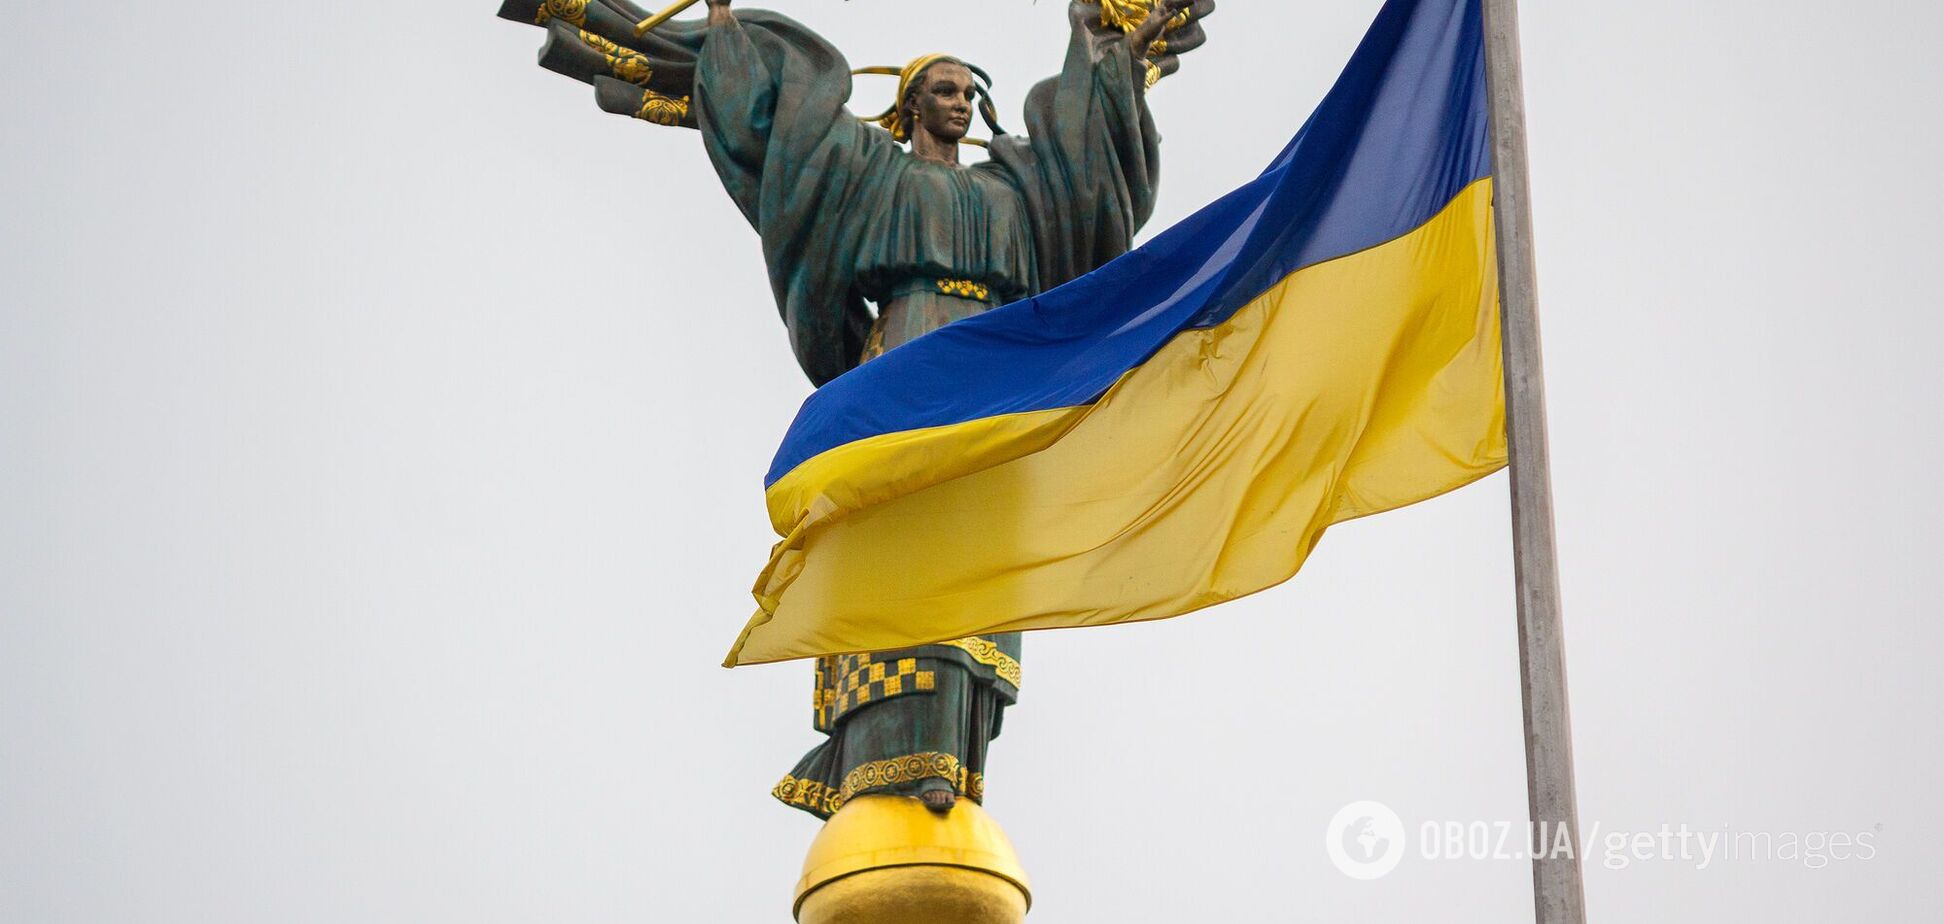 Наслідування для України: щоб оцінити свою реальність, потрібно зазирнути у вікна сусідів